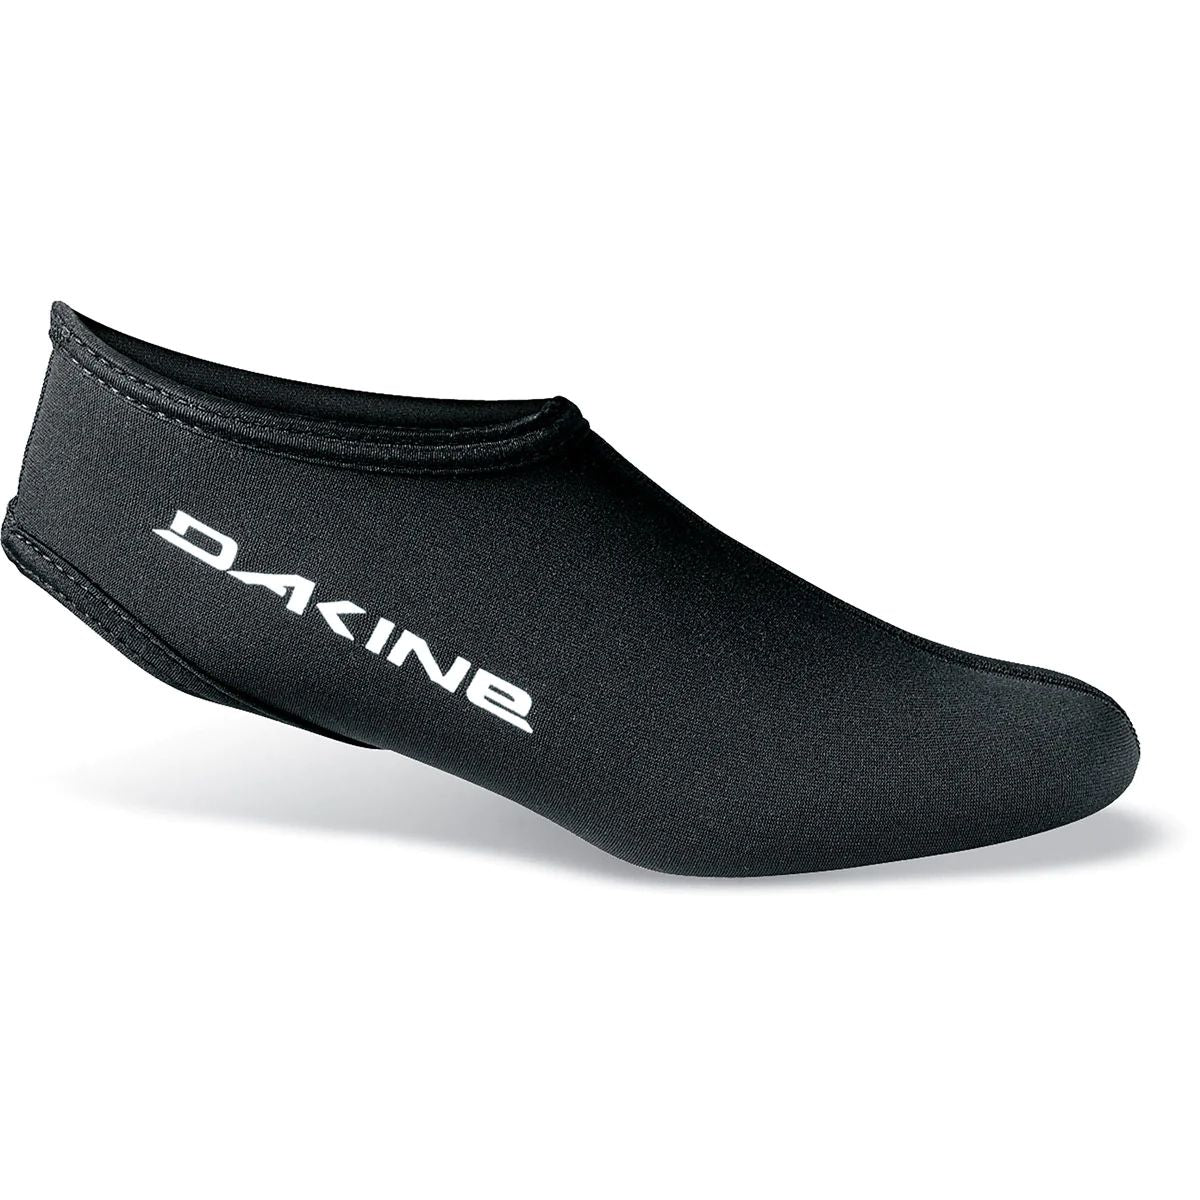 Dakine Fin Socks Black XL - Dakine Surf Accessories